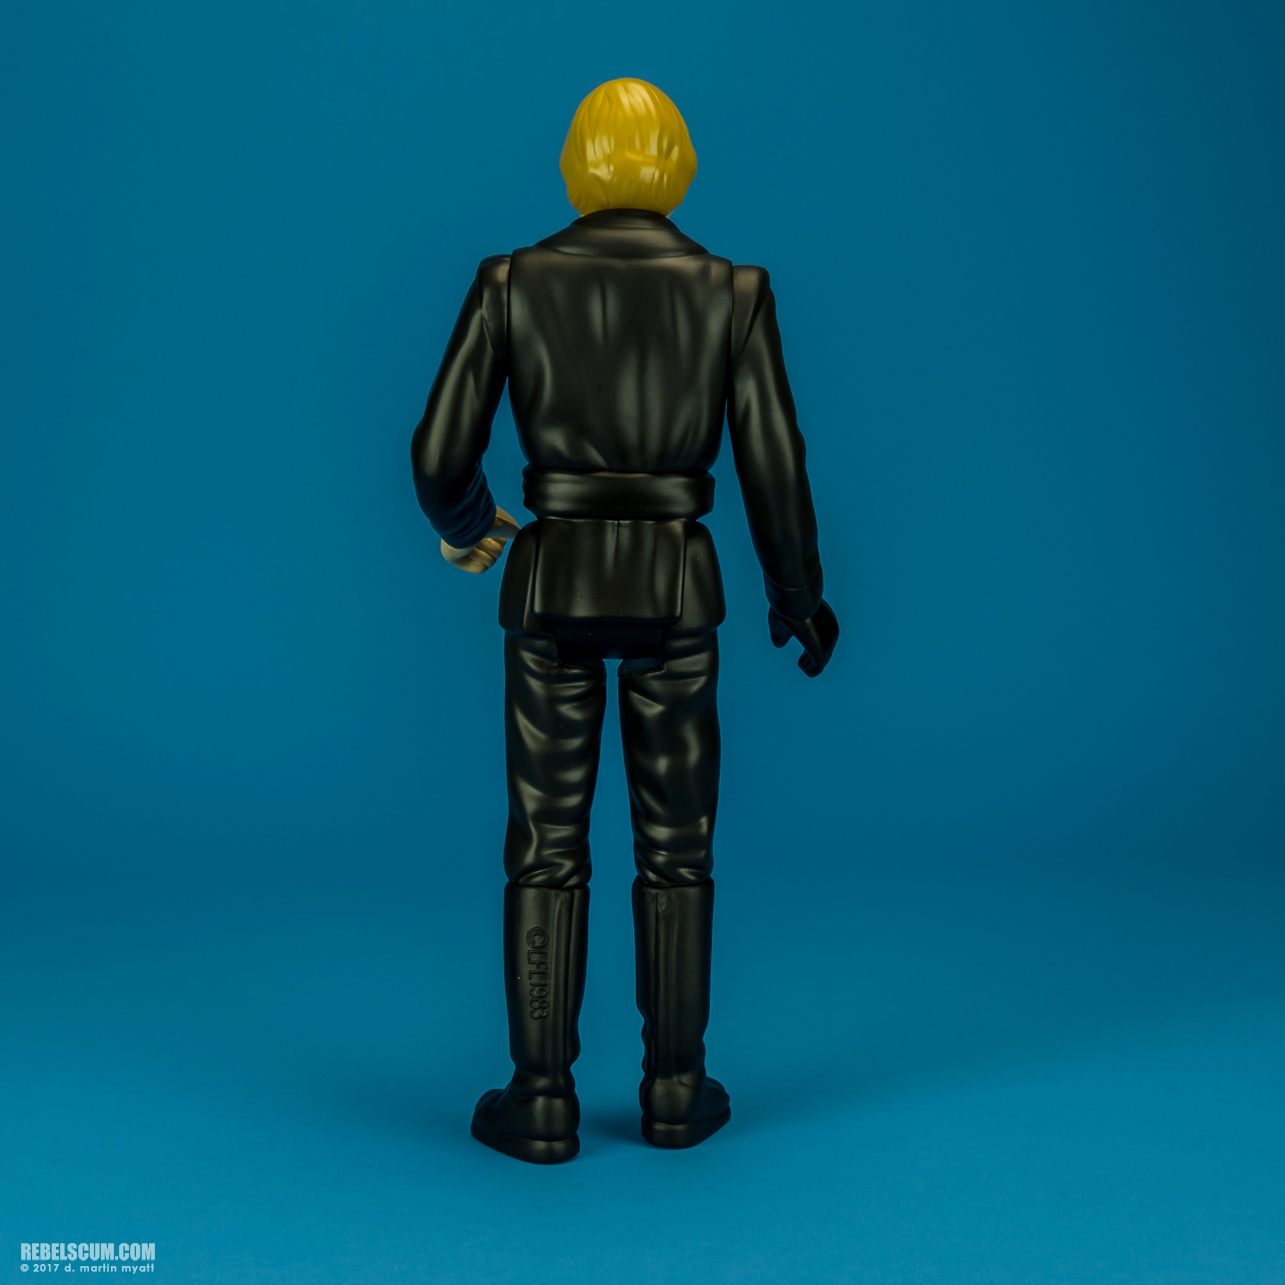 Luke-Skywalker-Jedi-Knight-Outfit-Jumbo-Kenner-004.jpg